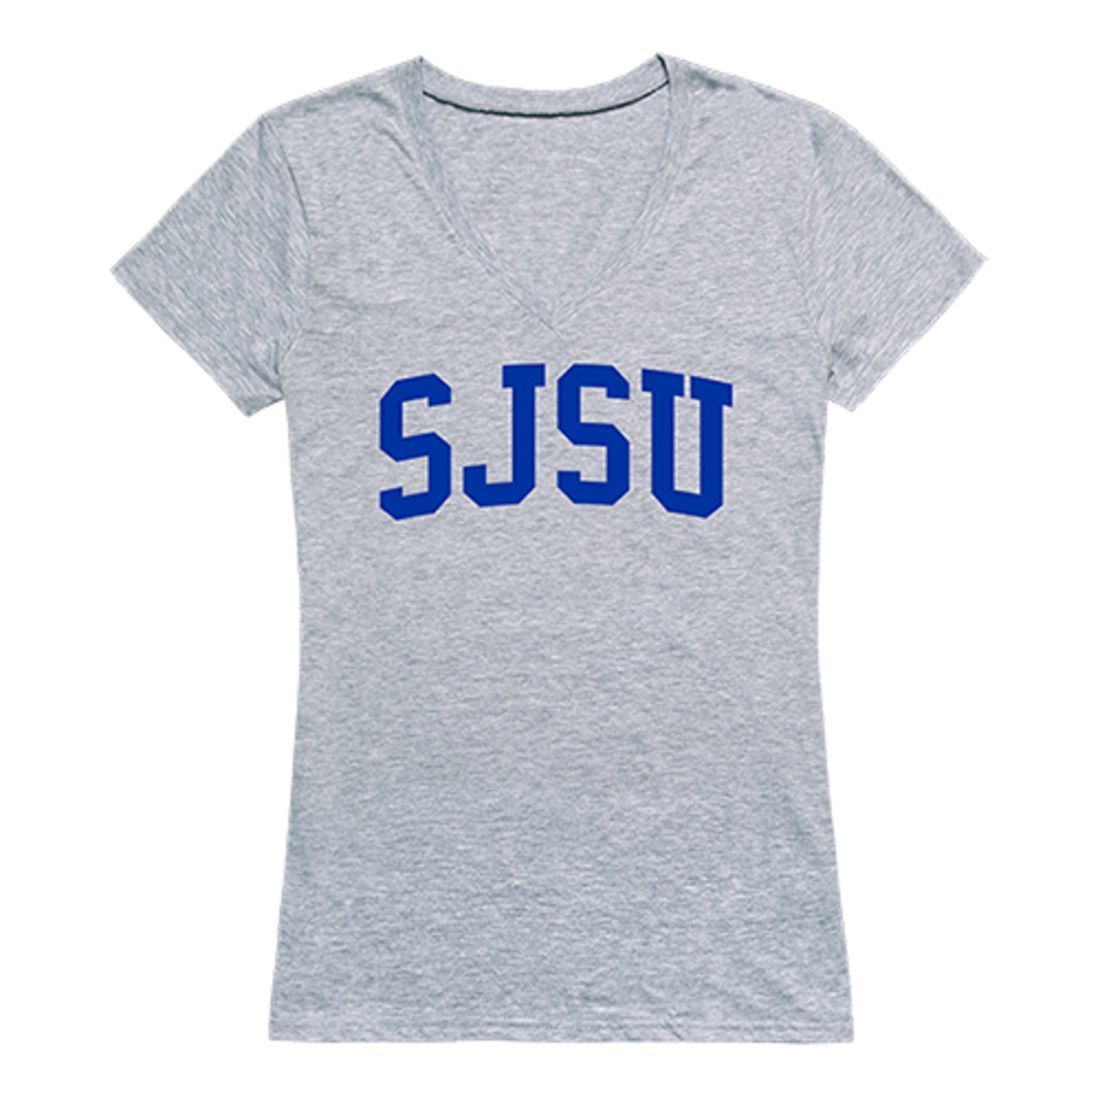 SJSU San Jose State University Game Day Women's Tee T-Shirt Heather Grey-Campus-Wardrobe